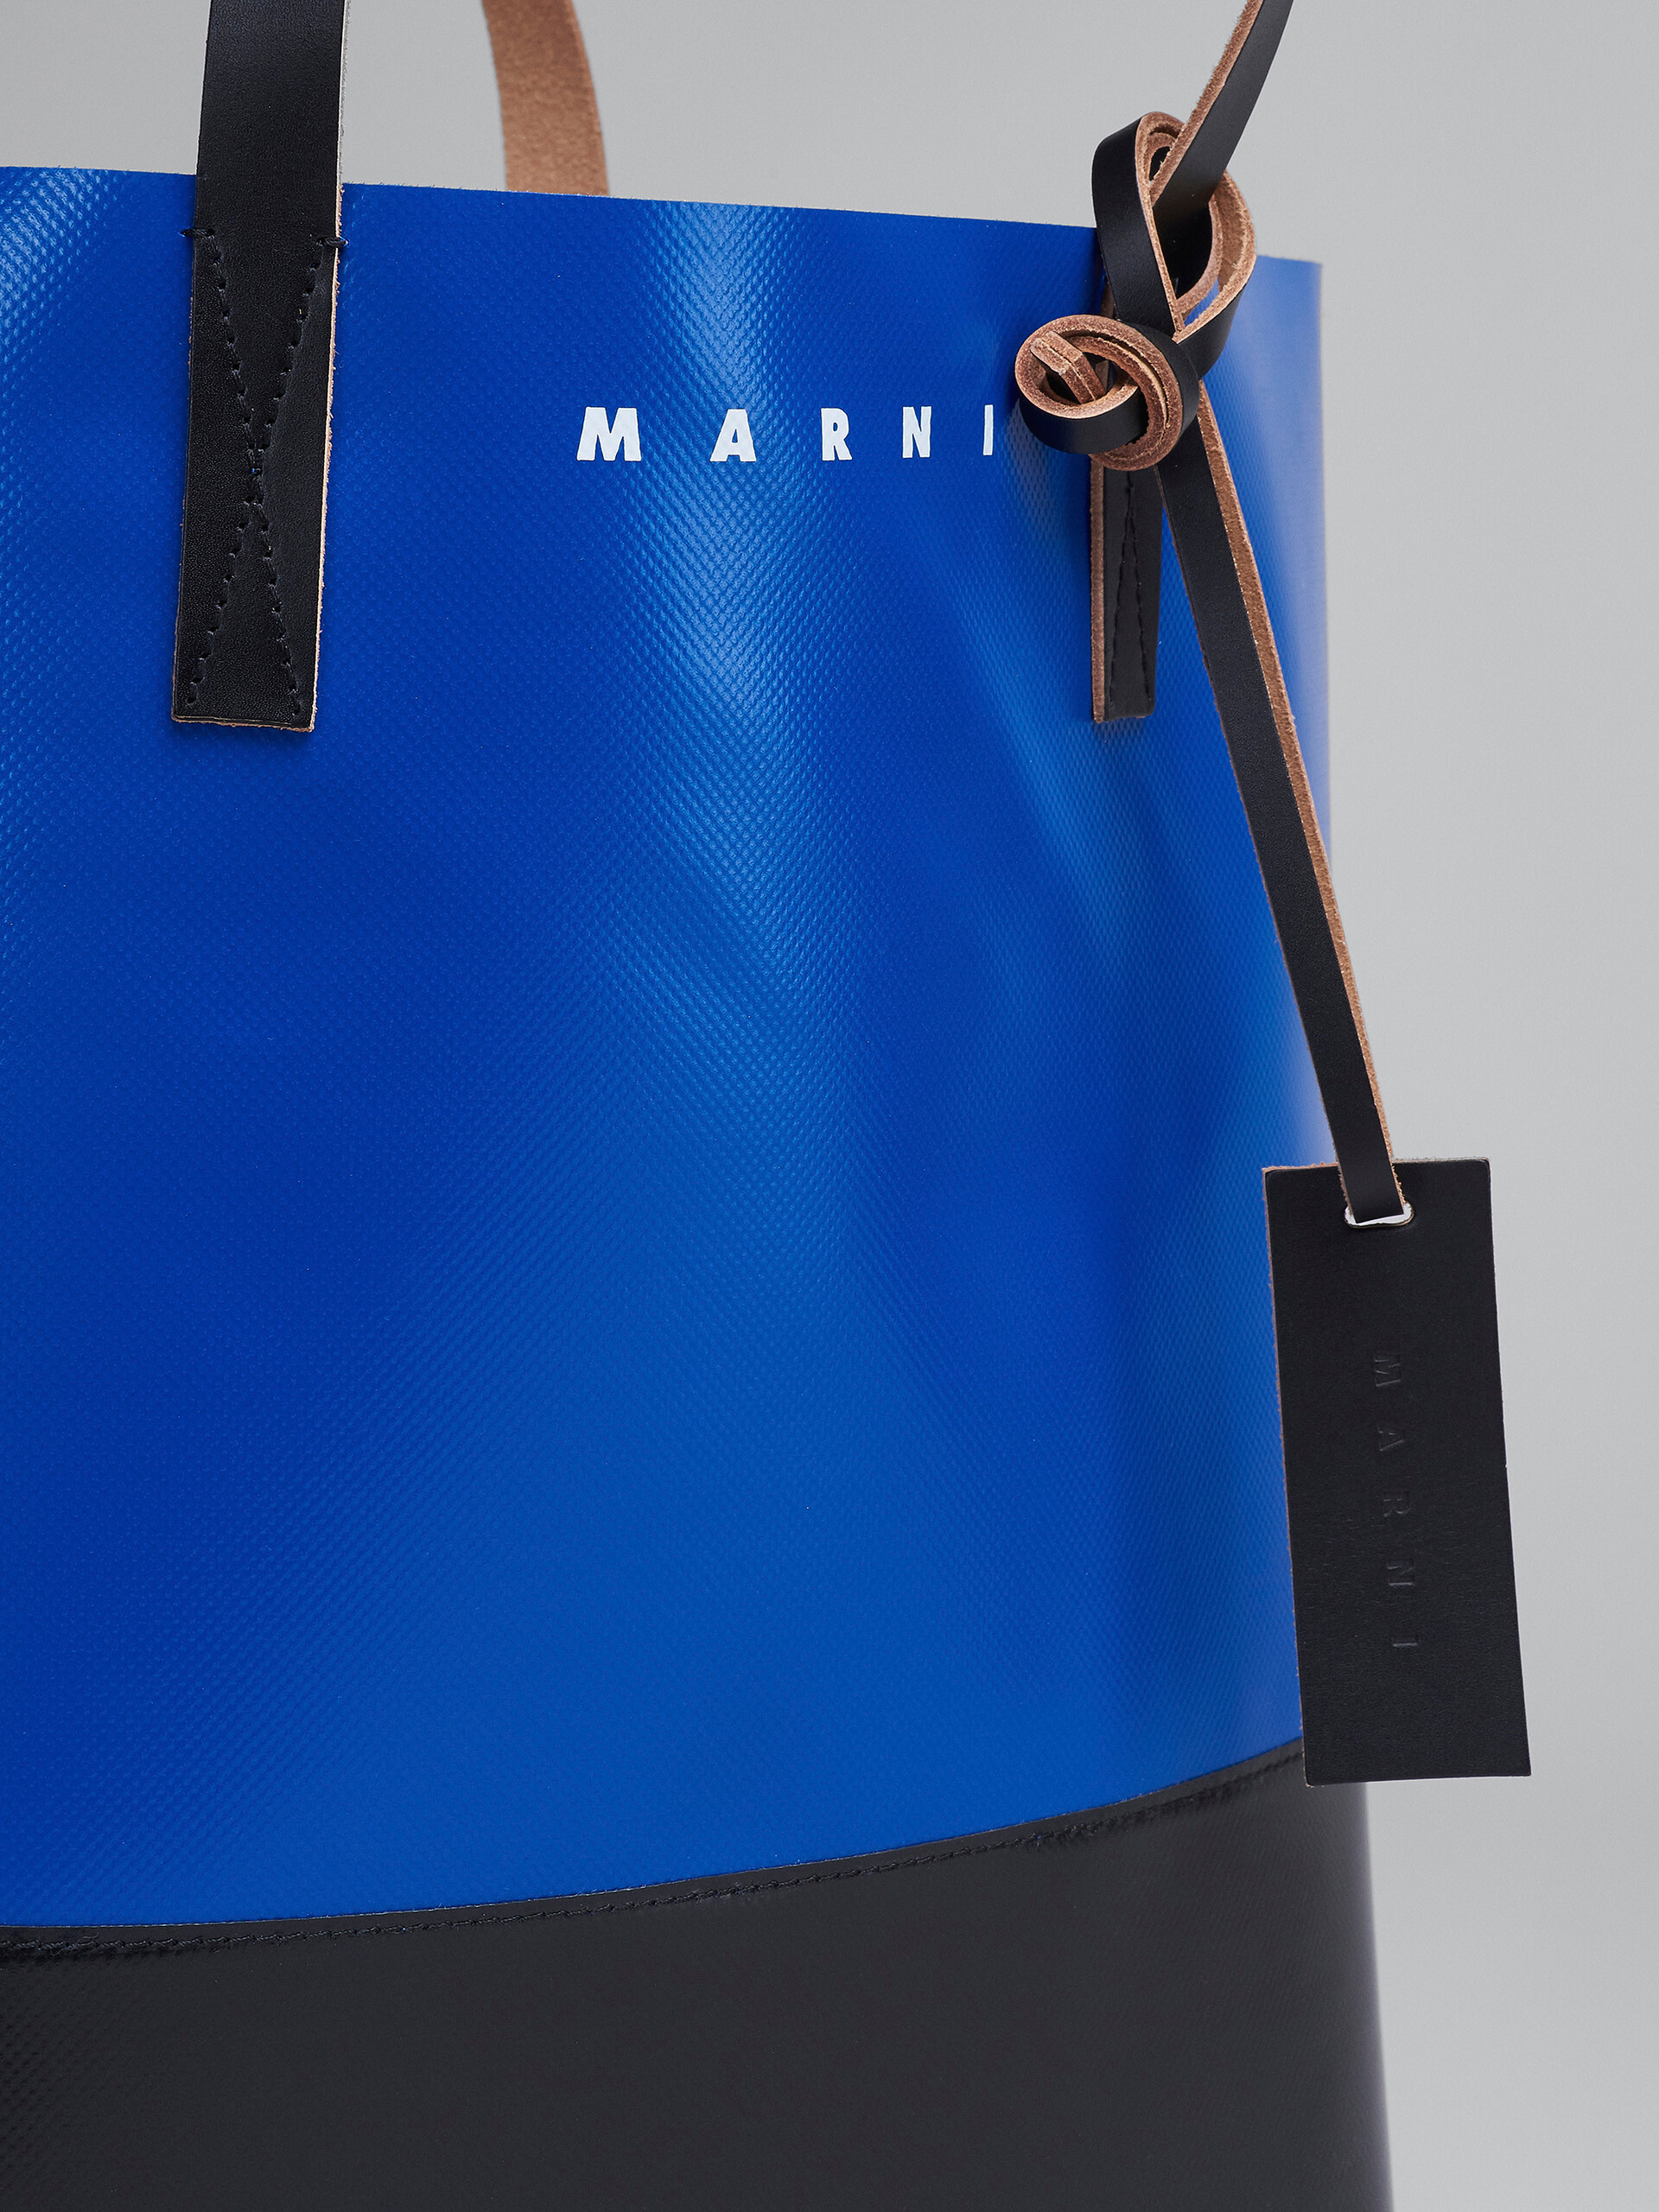 MARNI マルニ ブラック＆ブルー TRIBECA PVC ショッピングバッグ